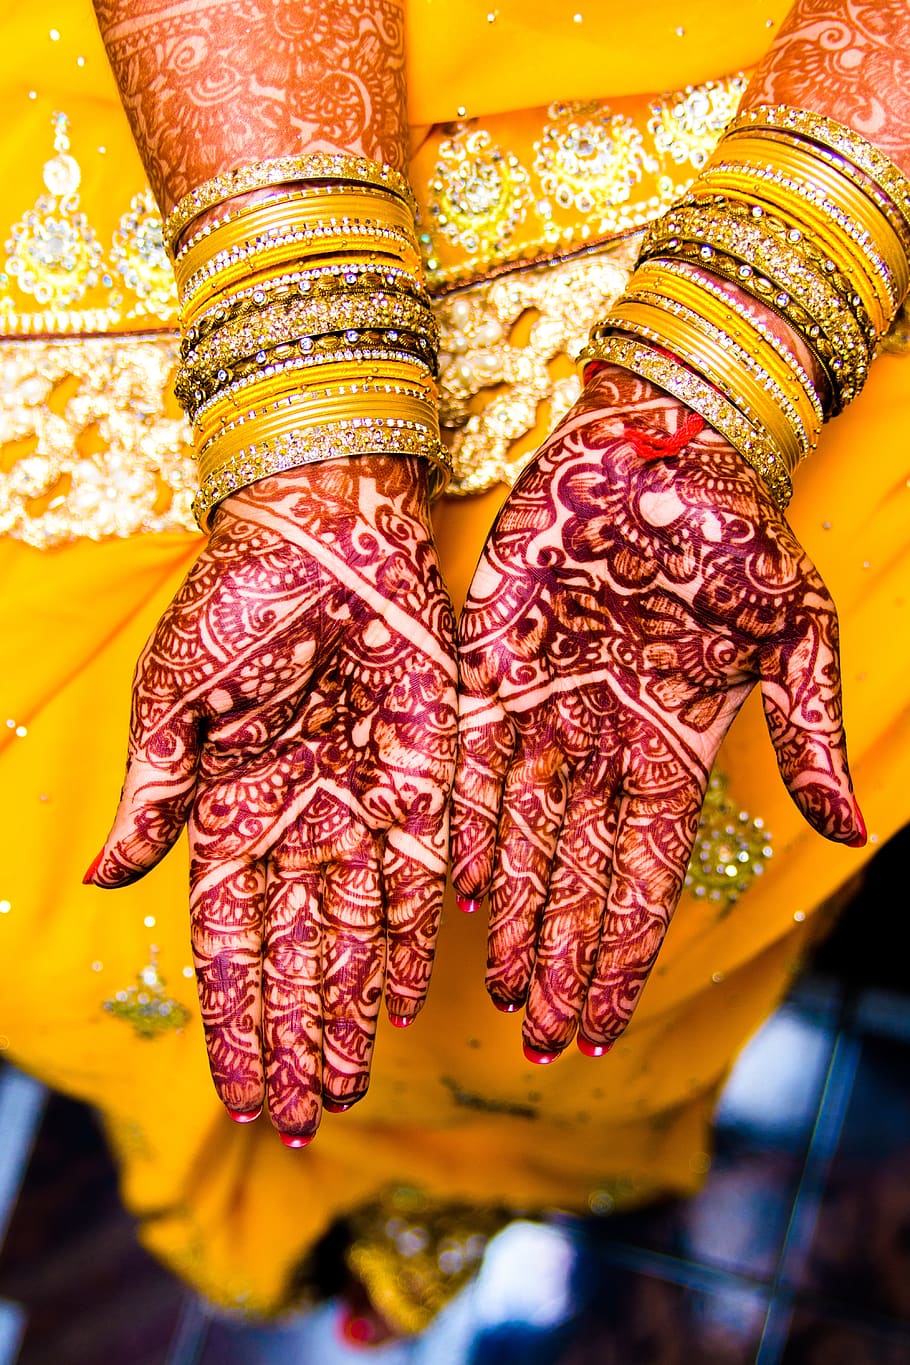 pulseiras, casamento, jóias, saree, ouro, cultura, indiano, luxo, celebração, decoração